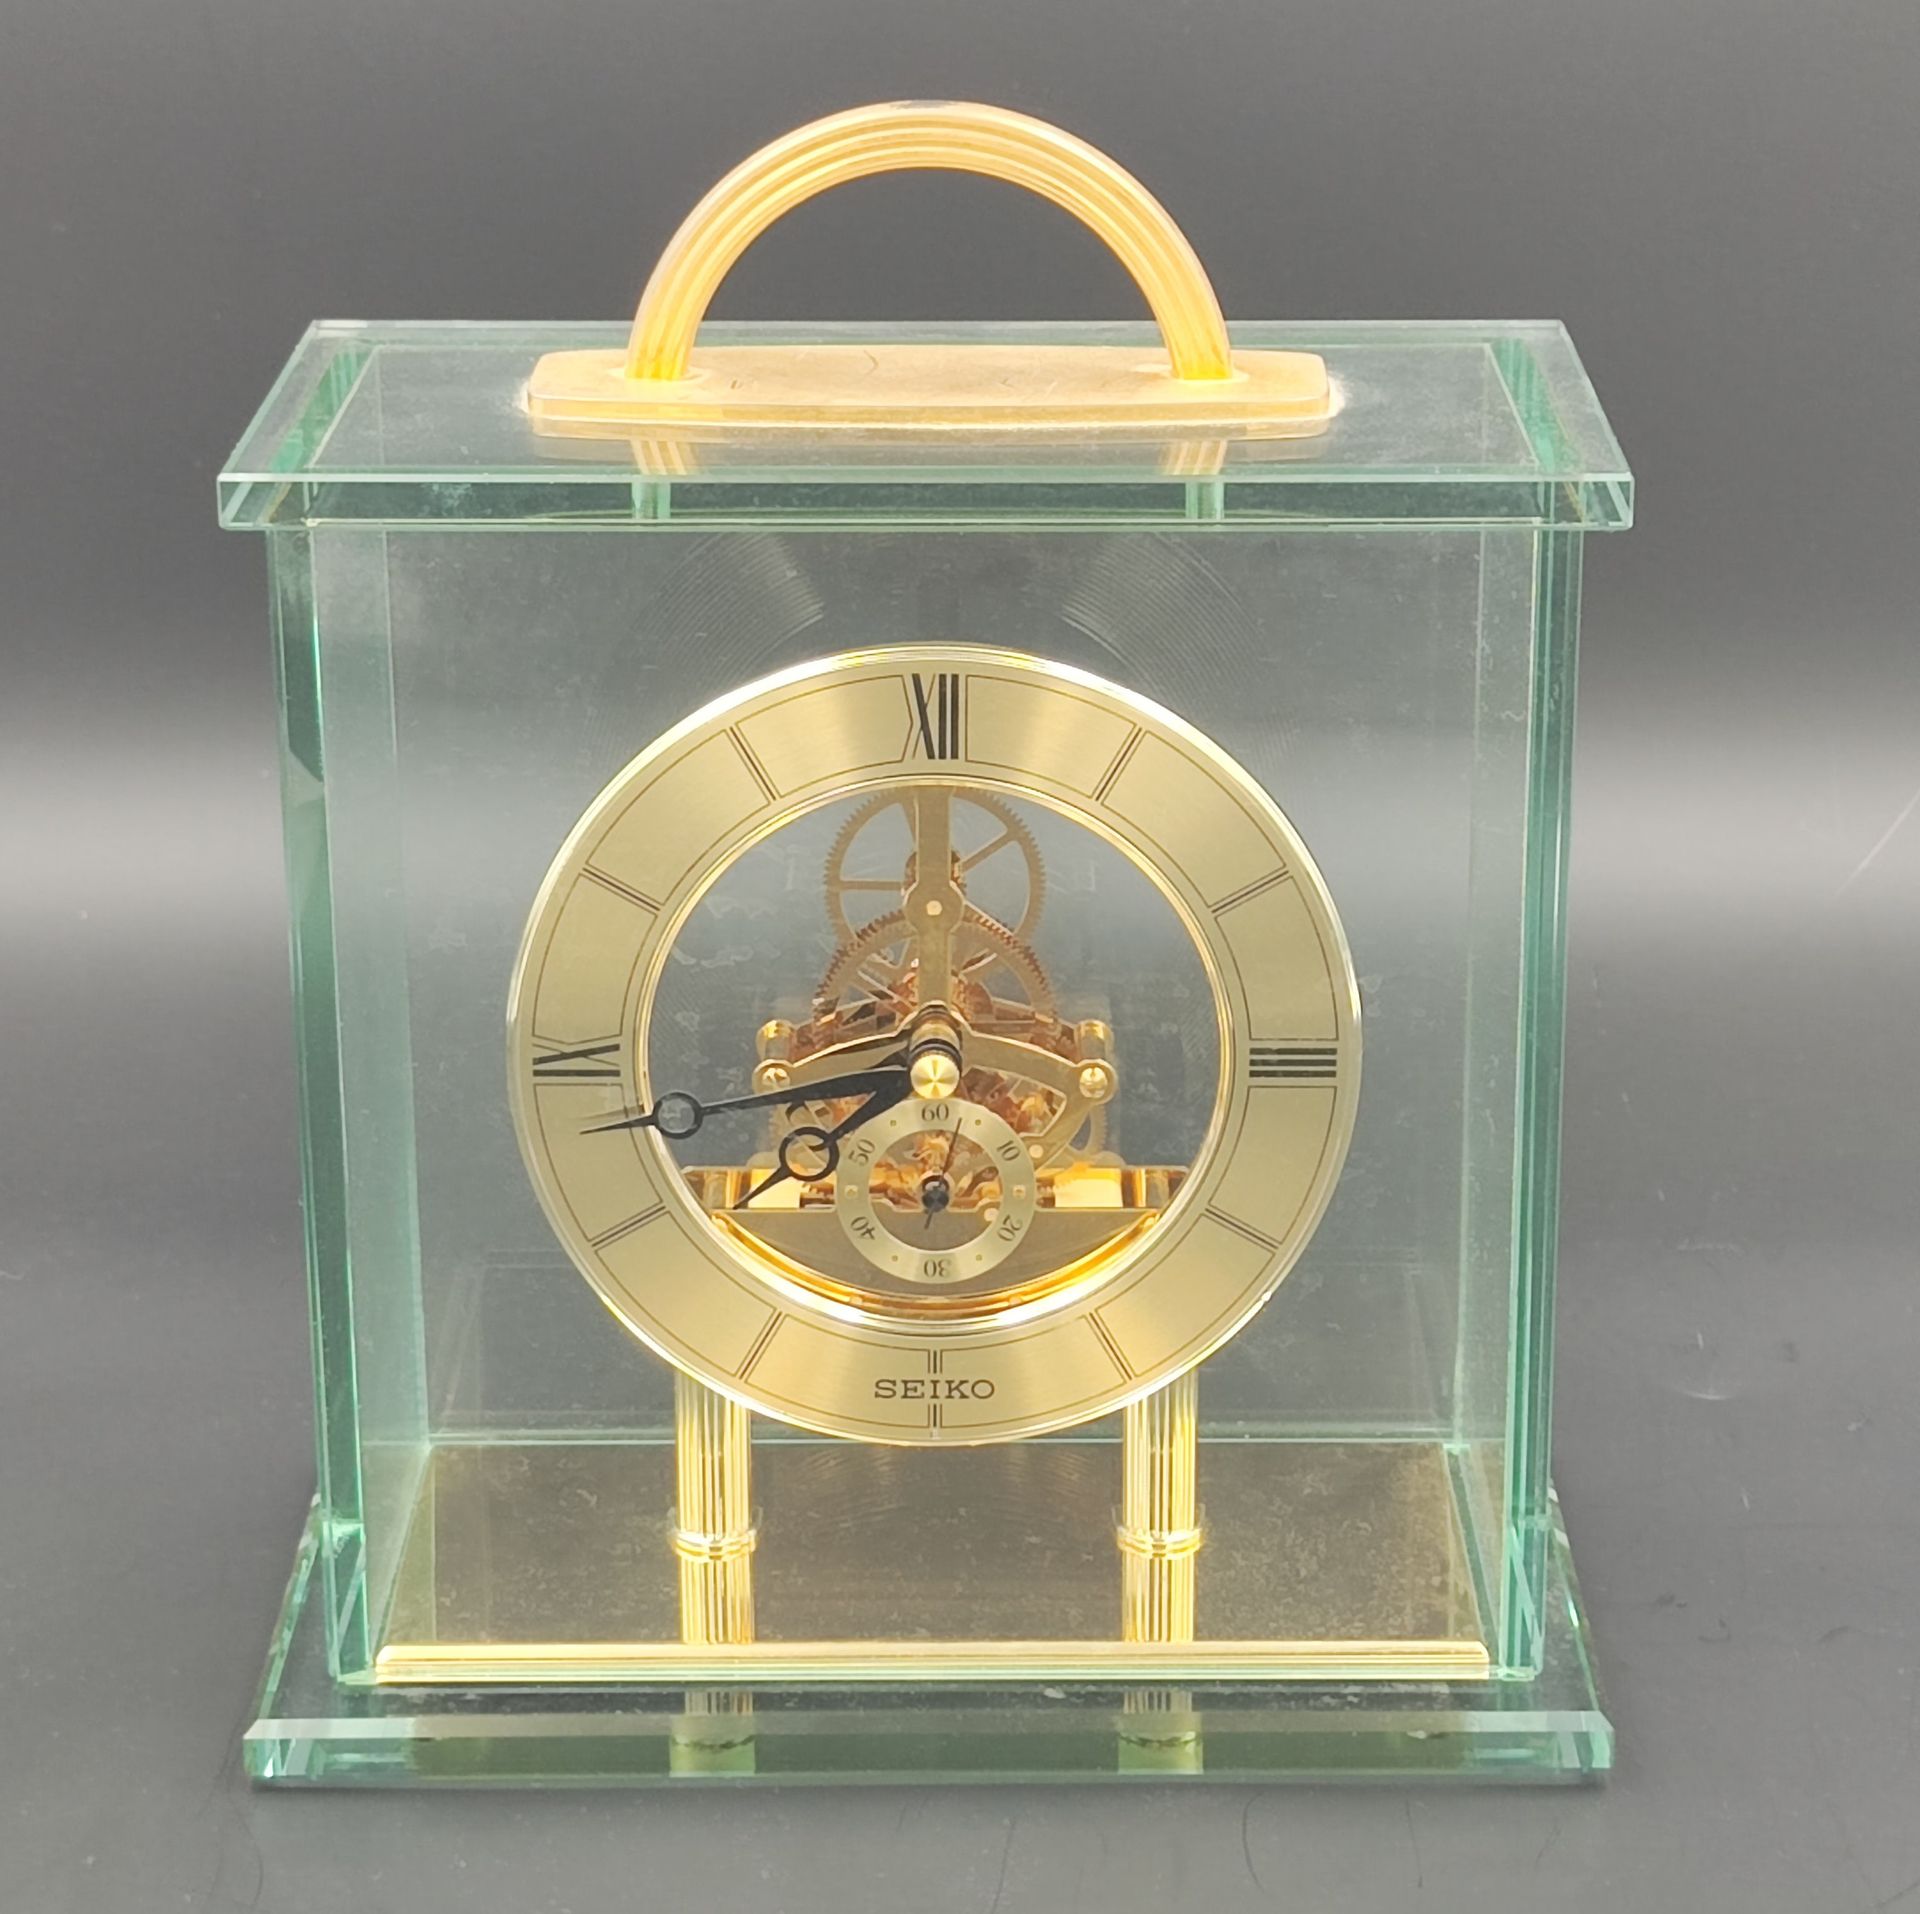 Null SEIKO.
镂空台钟，双刻度，罗马数字表示小时和分钟，另一个较小的阿拉伯数字表示秒钟。钢化玻璃表壳。机芯正常。
约 1980 年制造。
24 x 2&hellip;